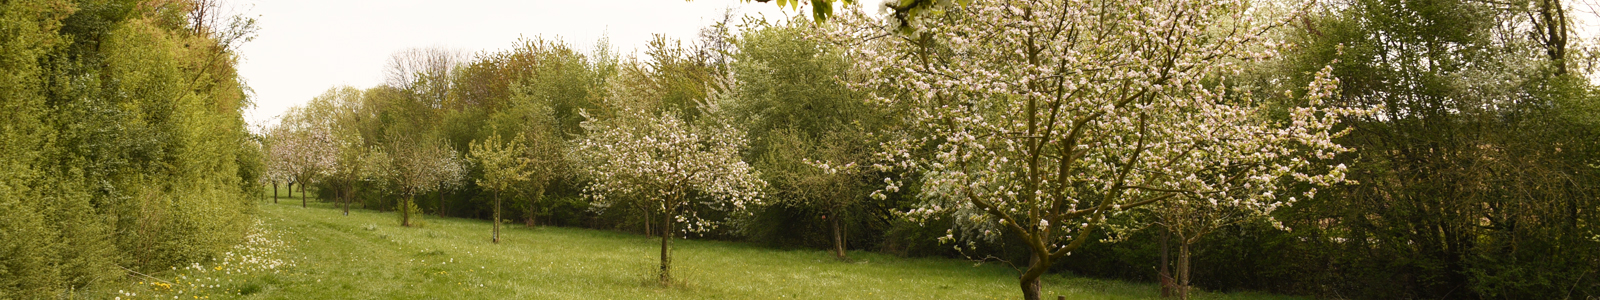 Blühende Kirschbäume ©Dr. Köhler